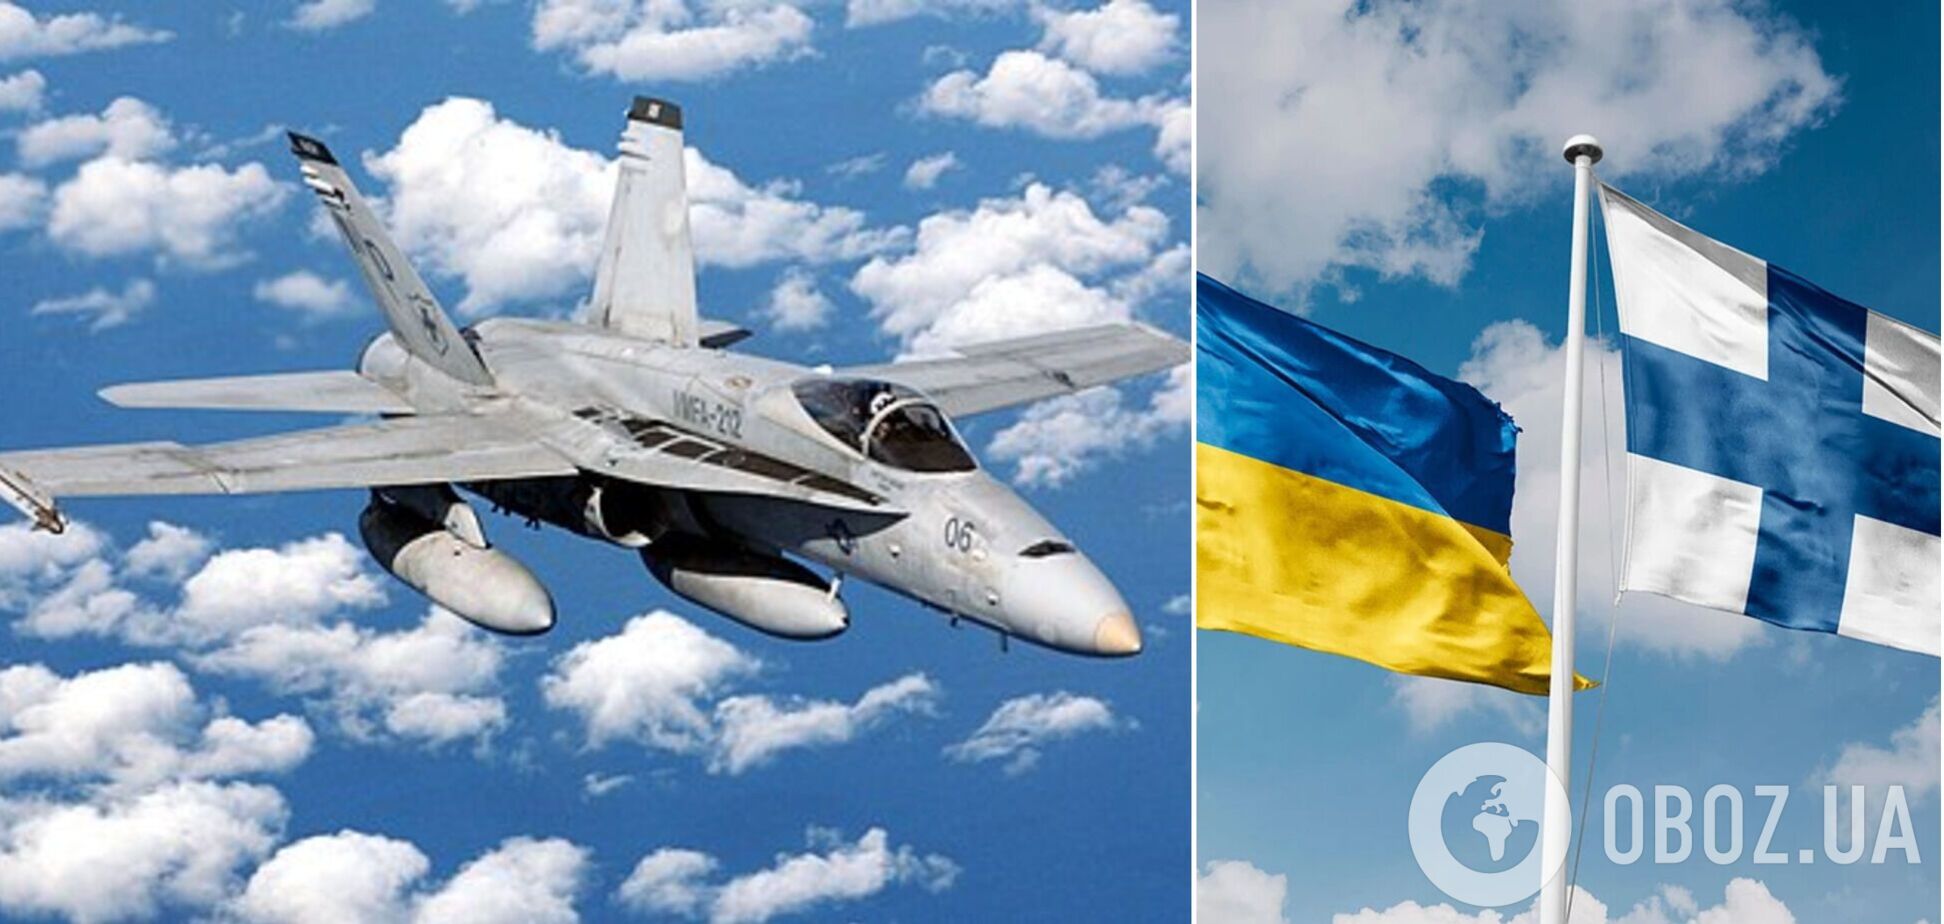 Финляндия рассматривает возможность передачи Украине истребителей Hornet – СМИ